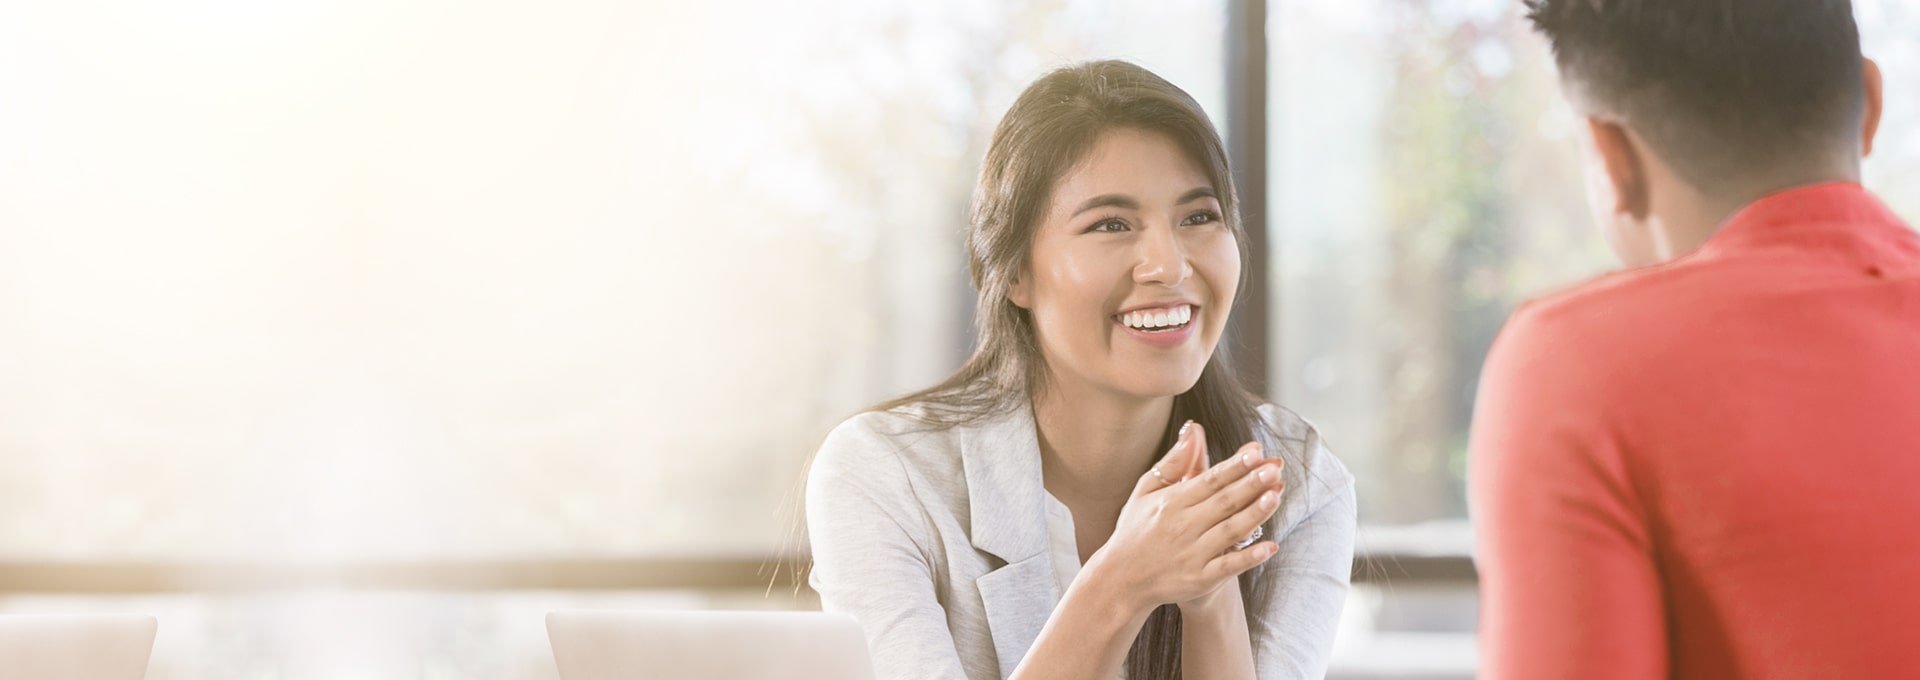 Femme d'affaires souriante, heureuse des changements positifs apportés par les appareils auditifs de Bernafon, discutant avec un client en chemise rouge.